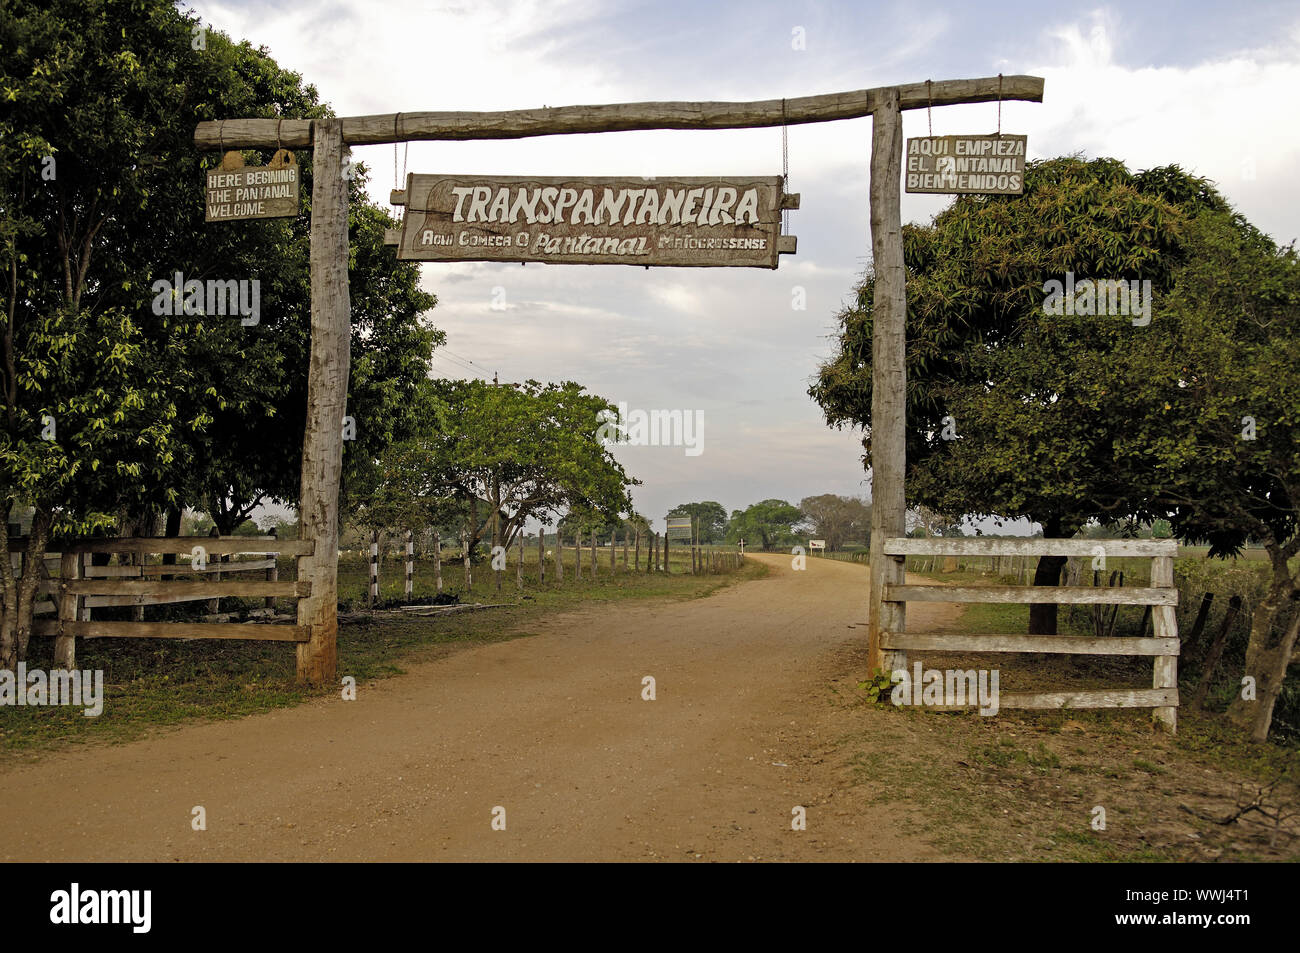 Cancello di ingresso alla Transpantaneira nel Pantanal Foto Stock